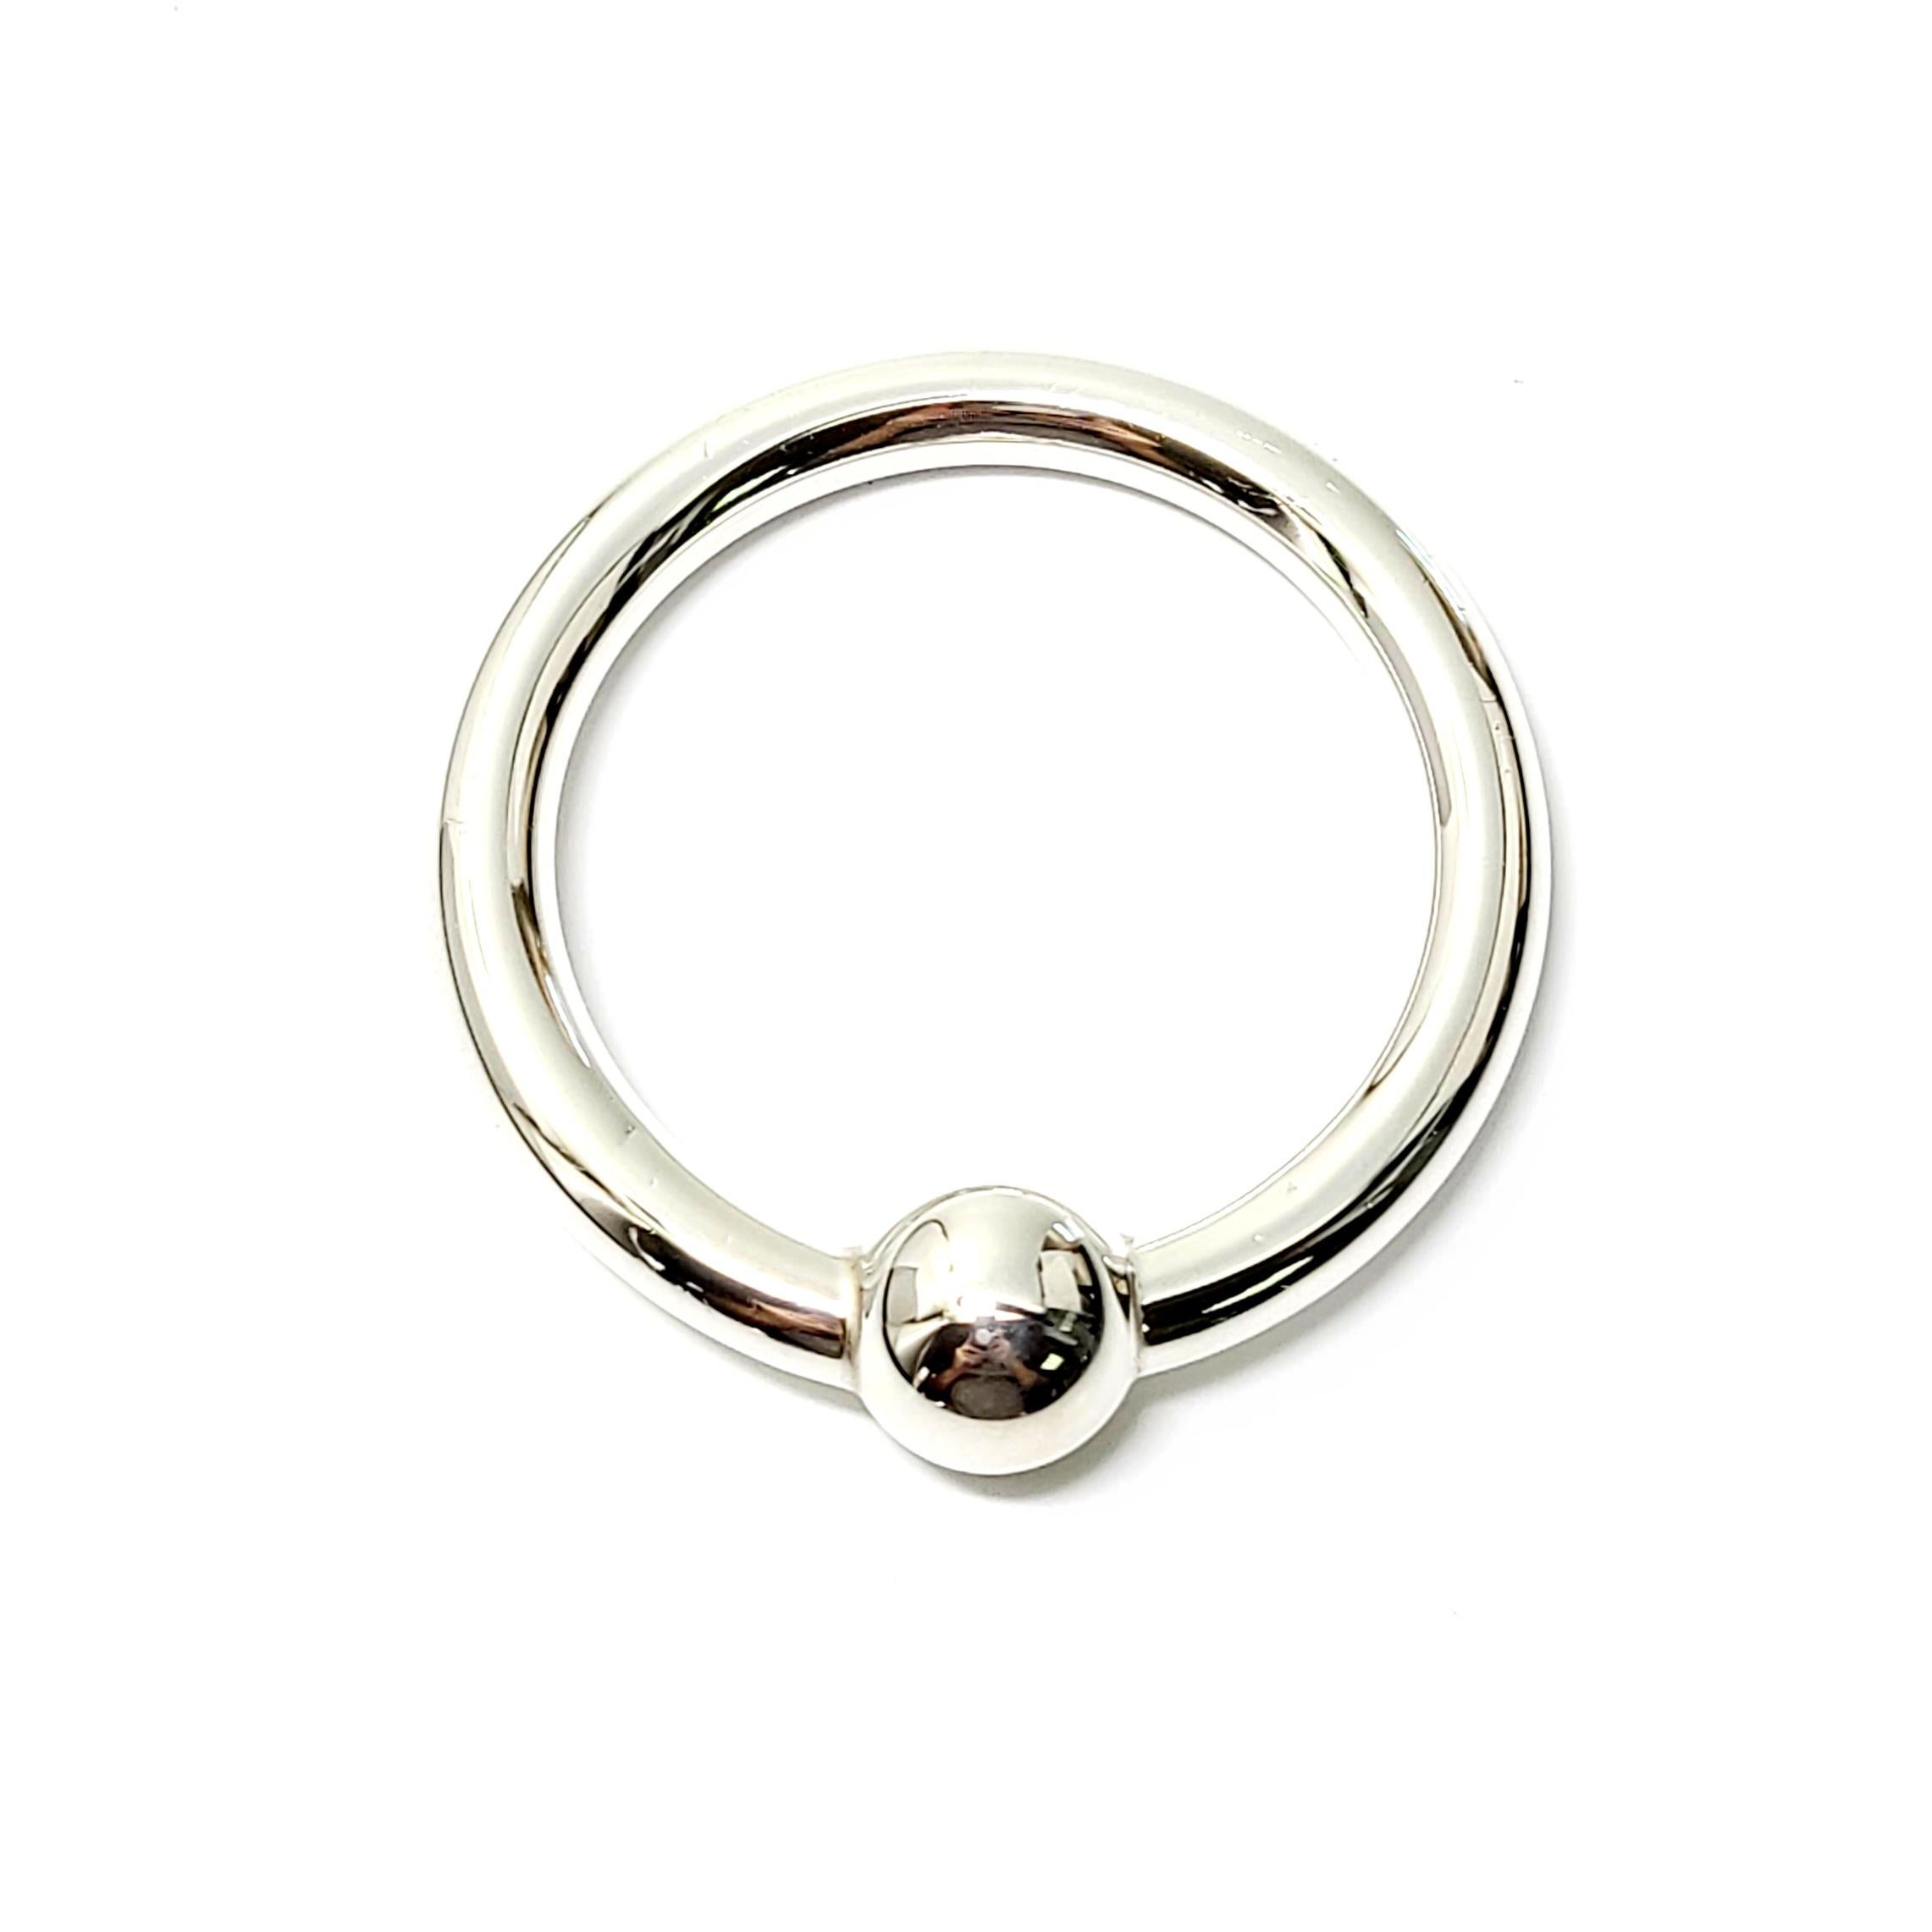 Tiffany & Co Sterling Silber Kreis Ring Rassel. 

Dies ist eine schöne und charmante Sterling Silber Kreis Ring Babyrassel mit einem Ball:: ein klassisches Design von Tiffany & Co. Es hat eine weiche süße klimpern:: wenn Sie es schütteln. Inklusive